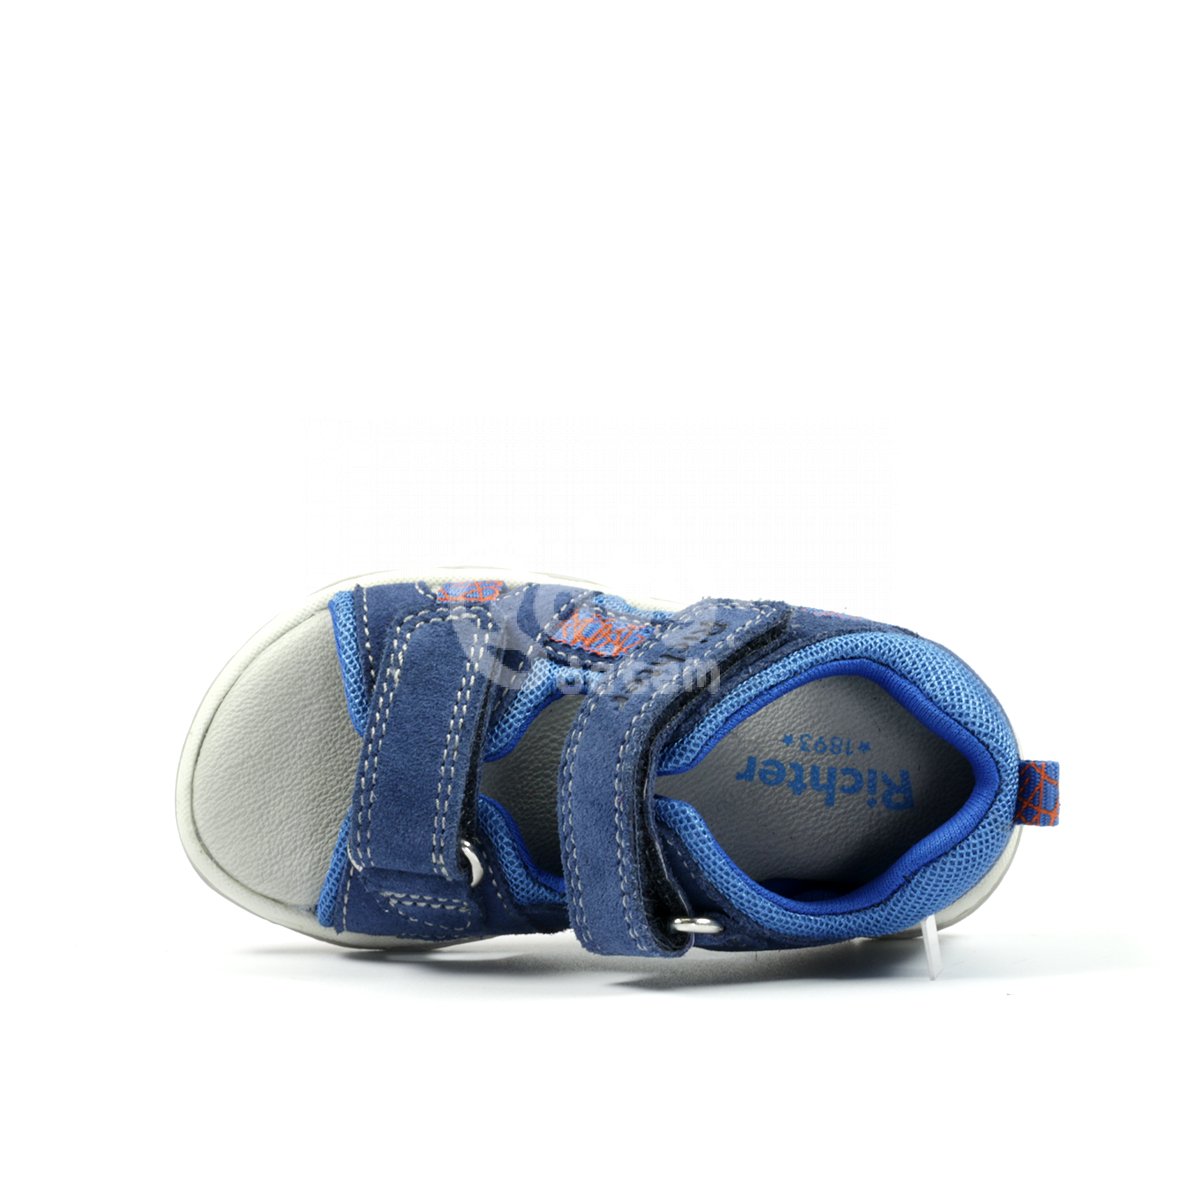 Kožené sandálky Richter 2350-3112-6821 modrá